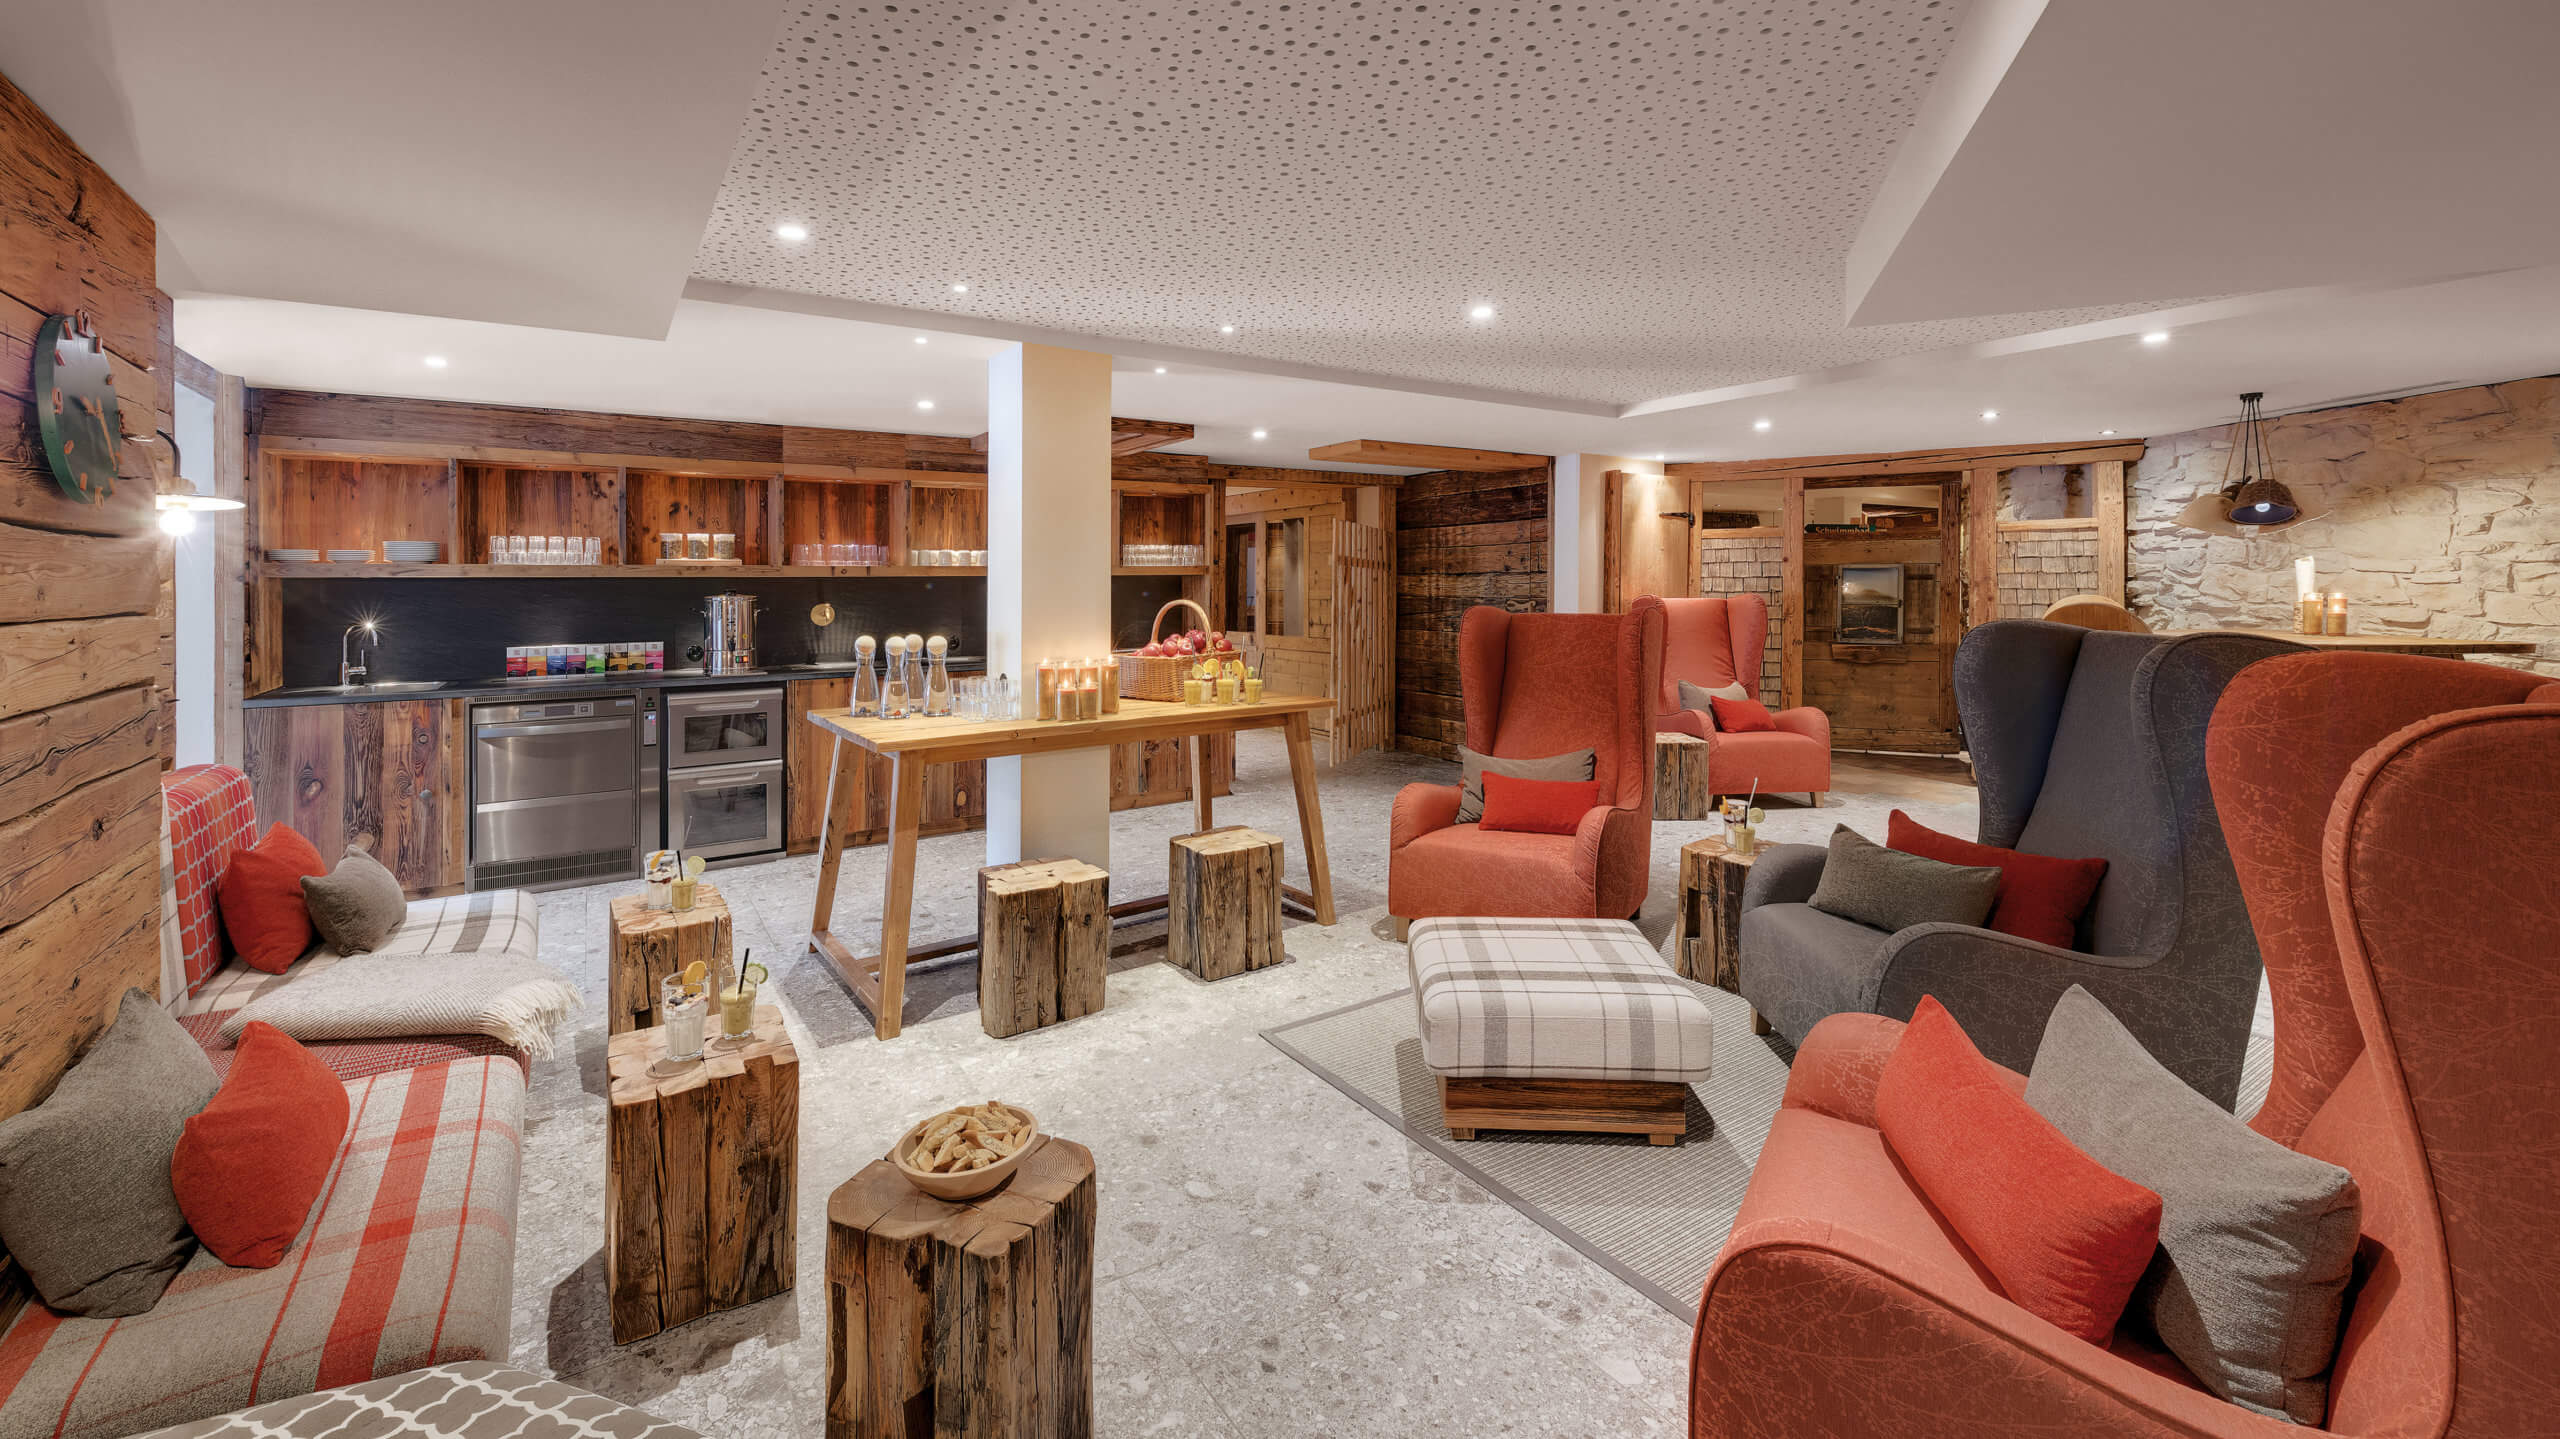 DasBild zeigt einen Aufenthaltsraum mit Bar im Hotel Oberstdorf mit vielen fabigen Sesseln und einem Kamin.